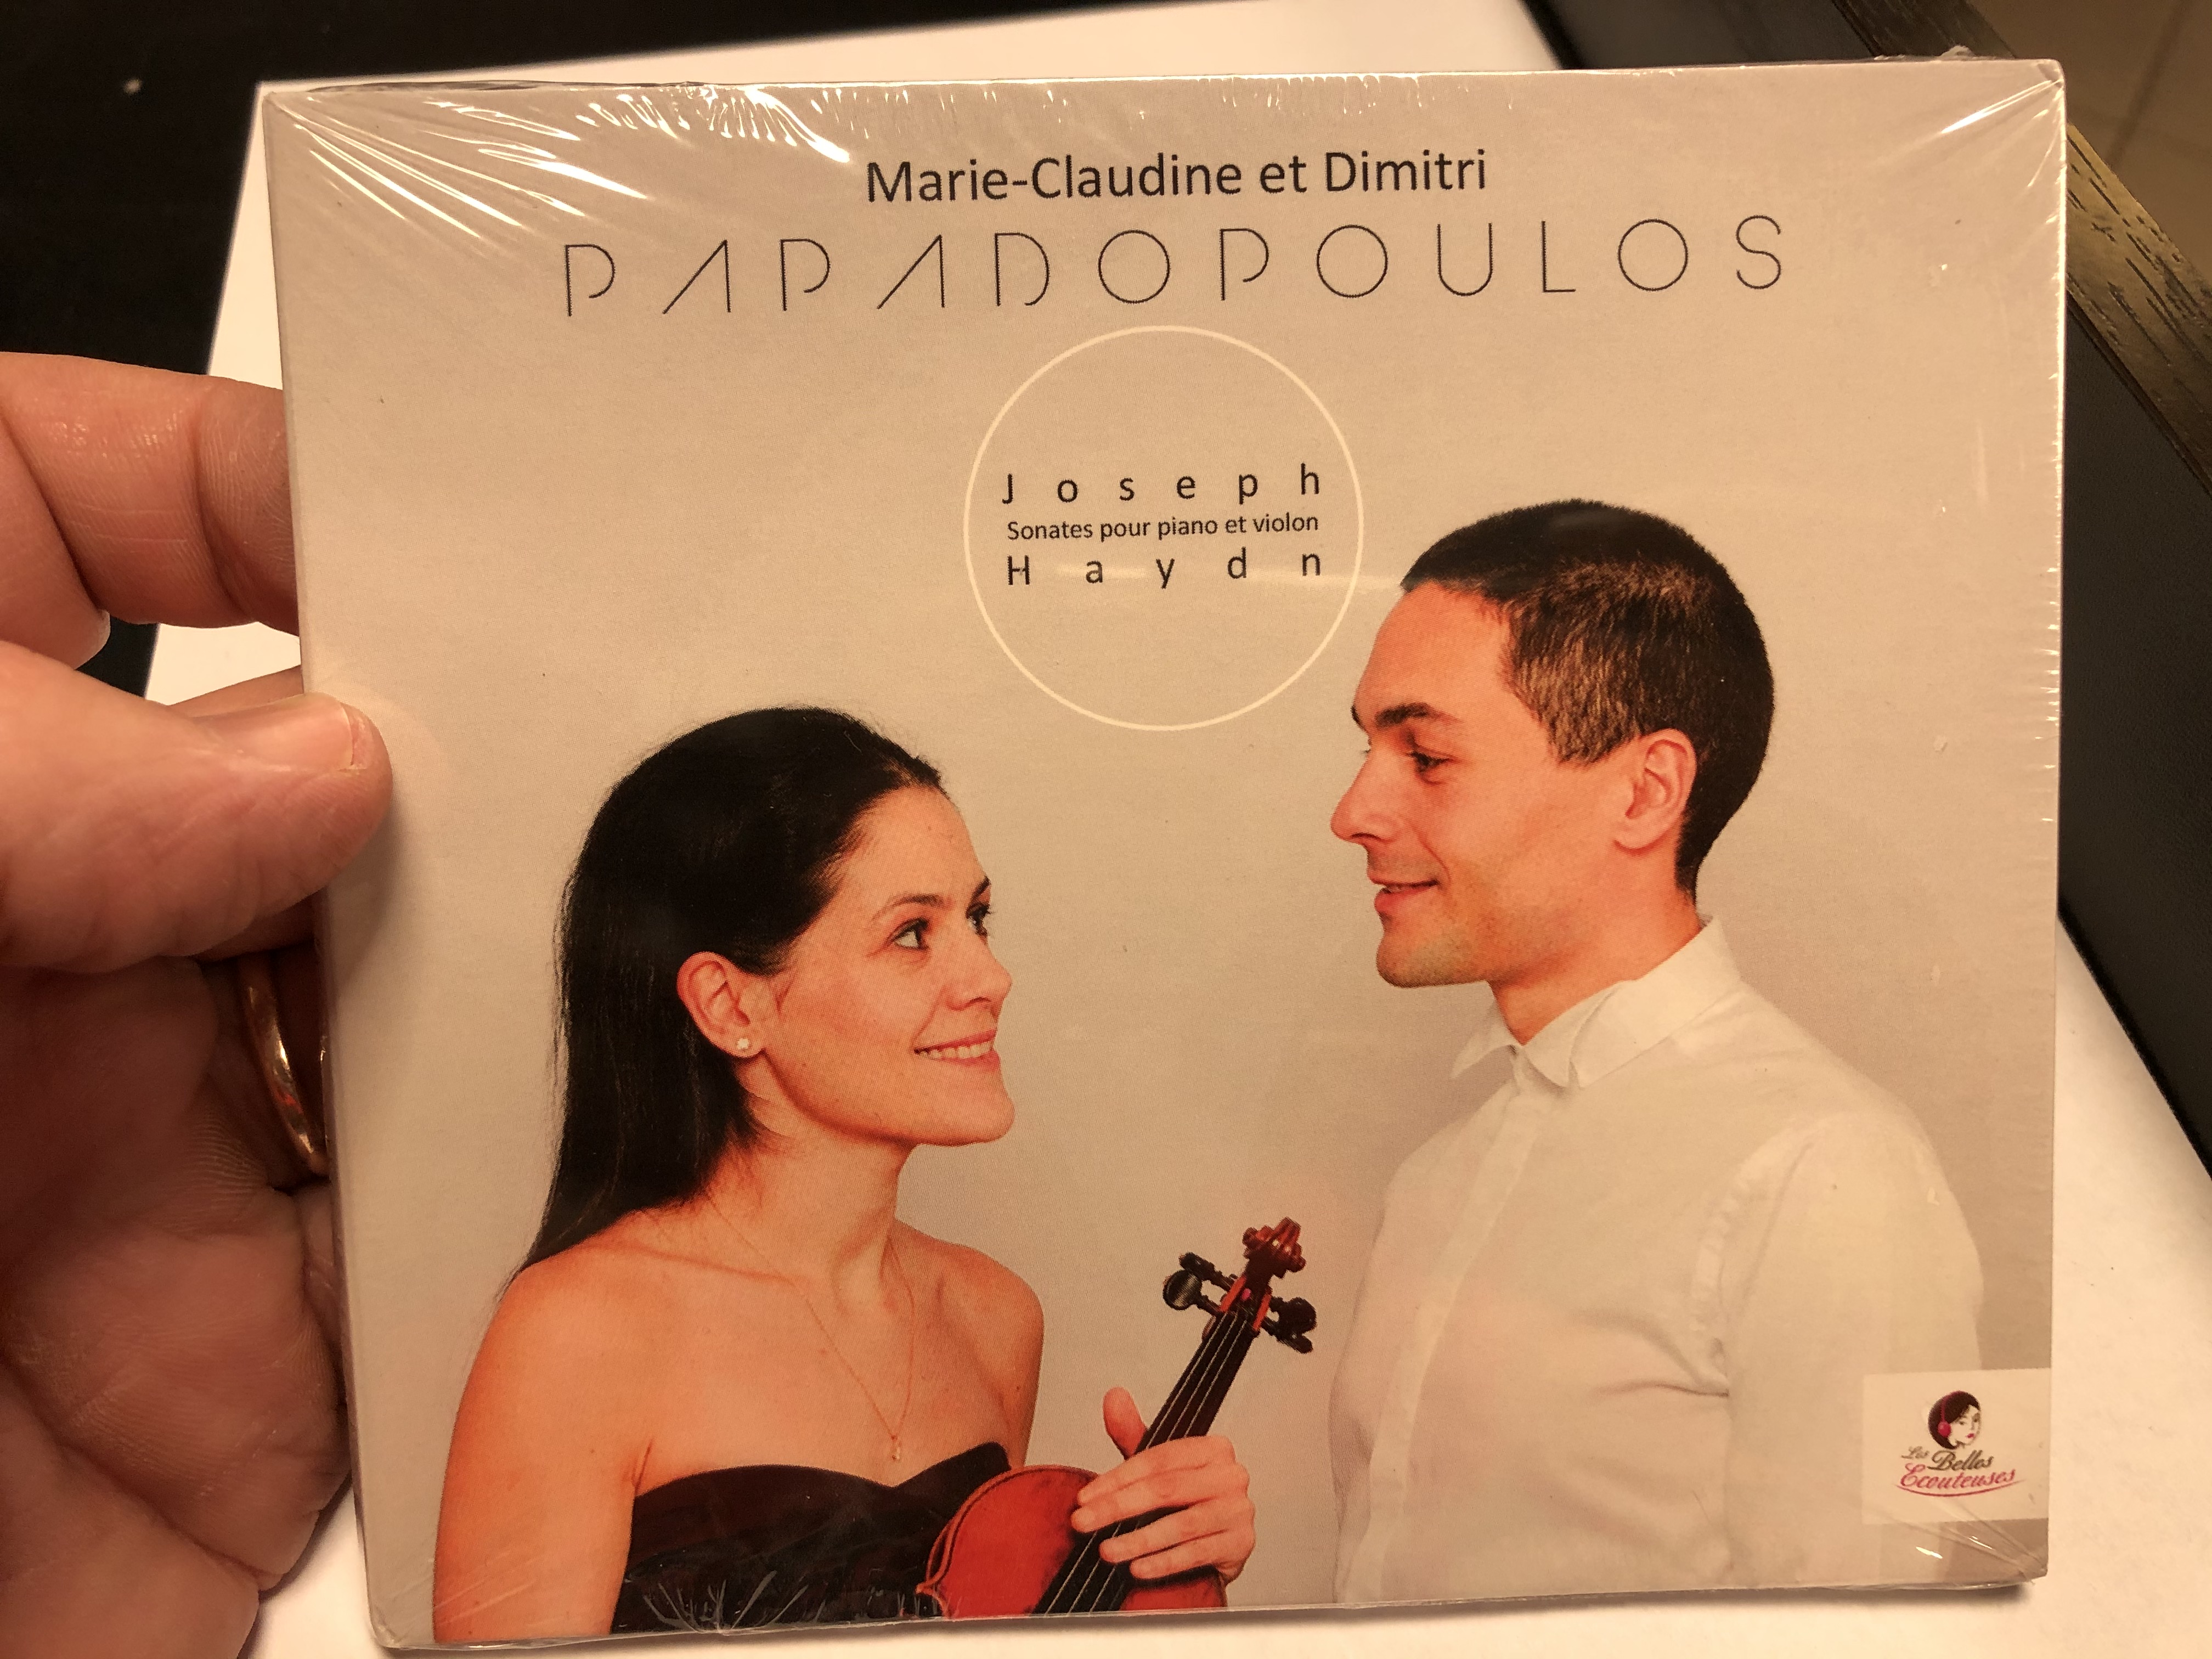 marie-claudine-et-dimitri-papadopoulos-joseph-haydn-sonates-pour-piano-et-violon-les-belles-ecouteuses-2x-audio-cd-2018-lbe20-1-.jpg